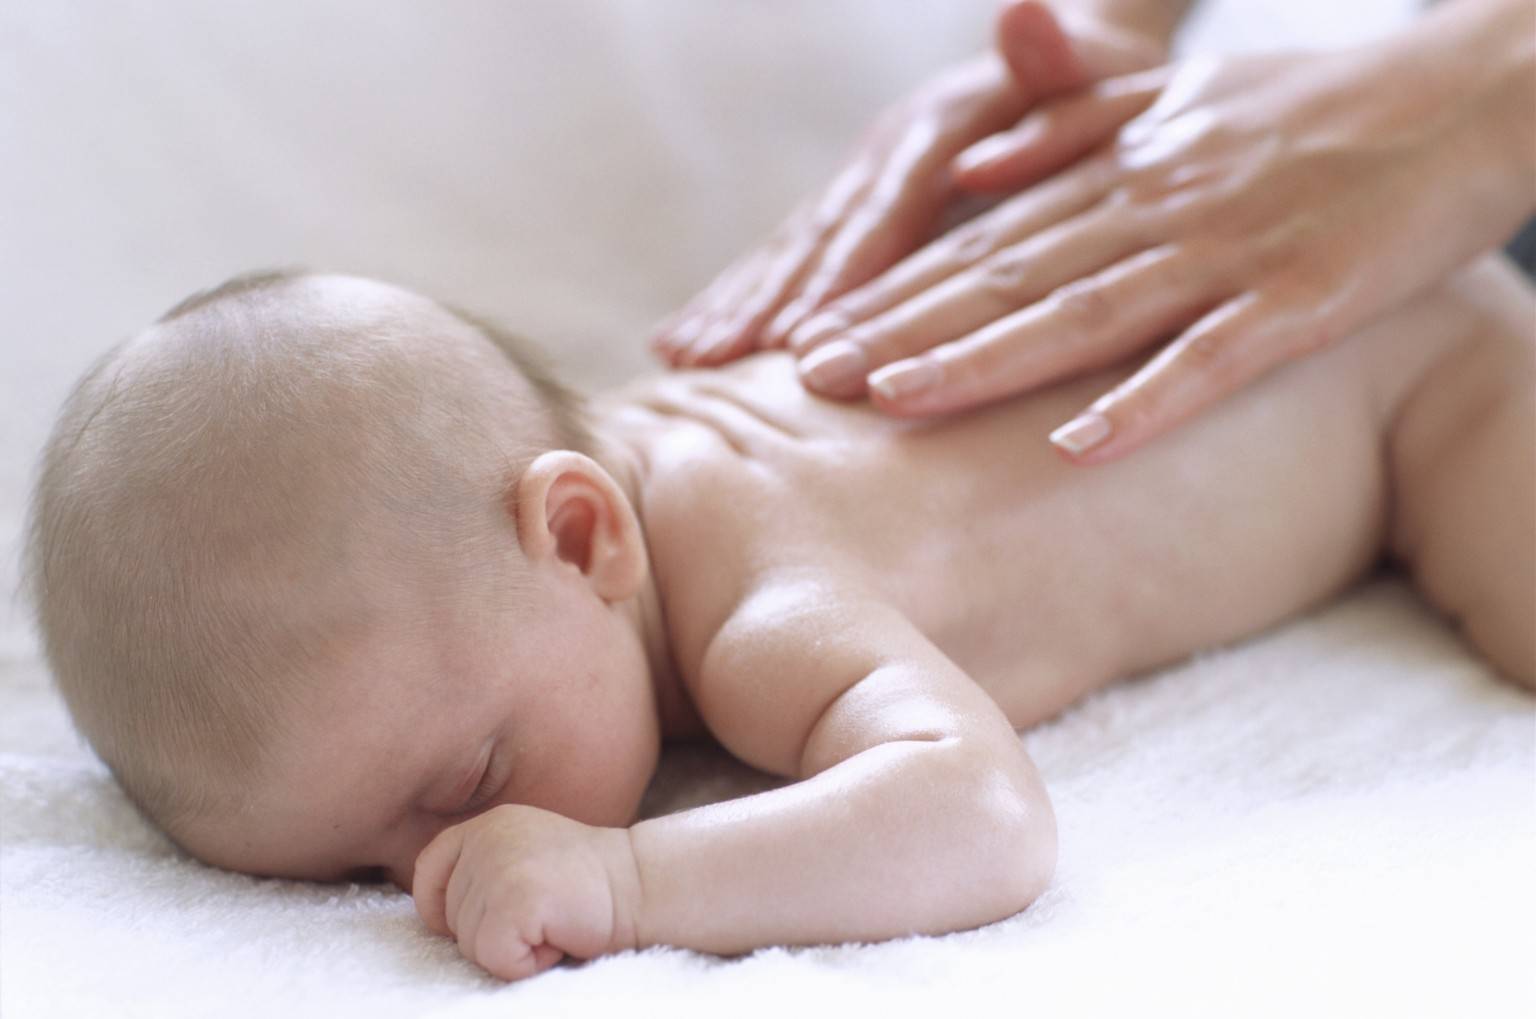 Зачем нужен массаж новорожденным и грудничкам?